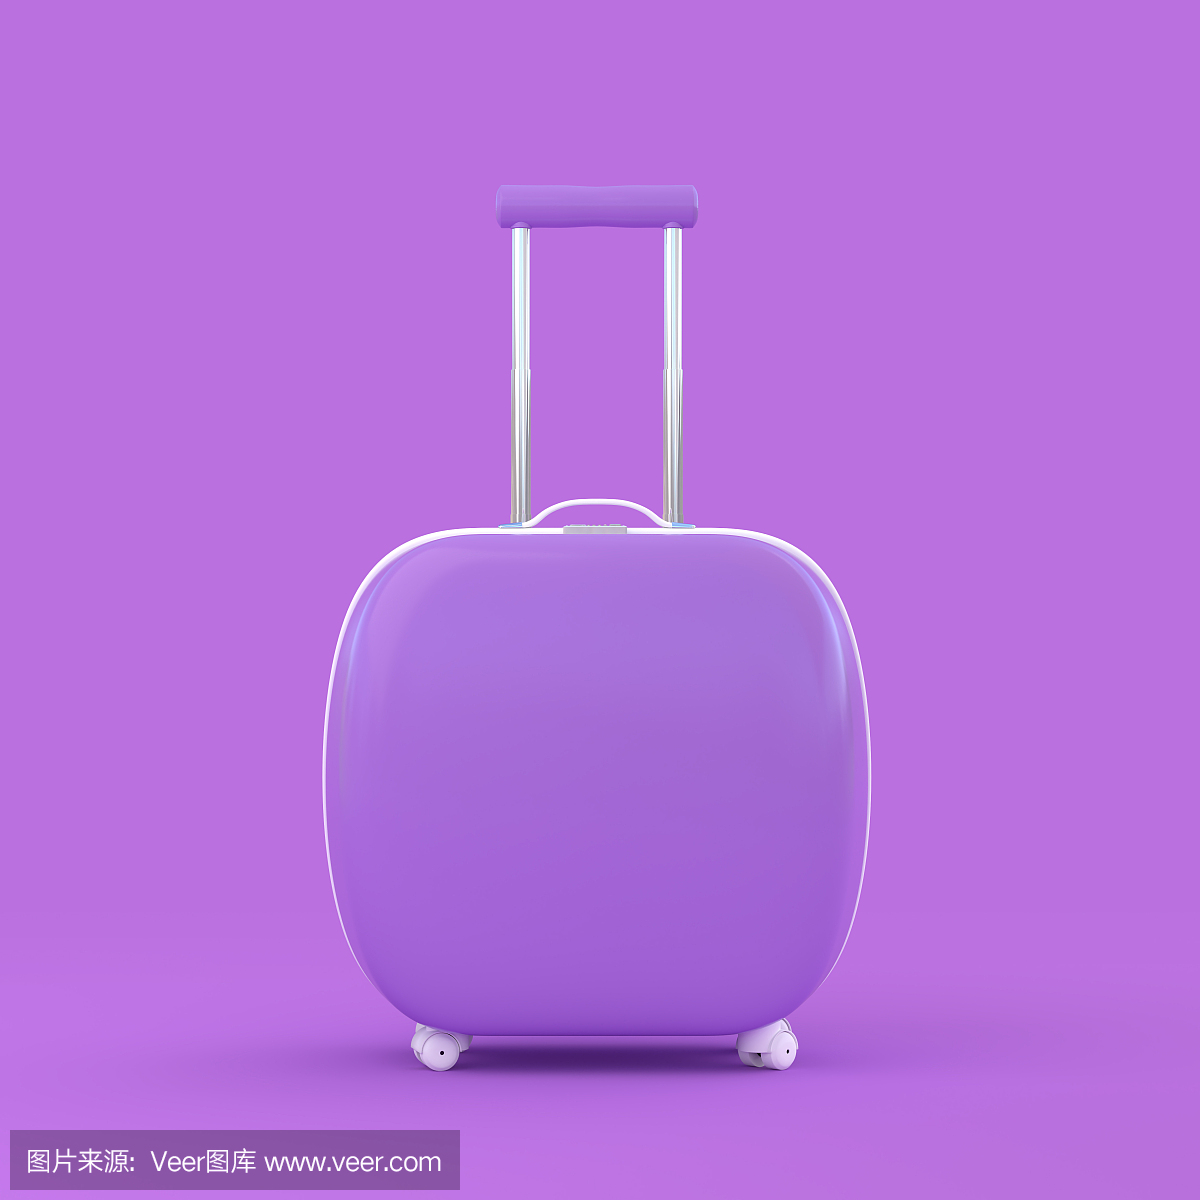 旅行手提箱紫罗兰色紫罗兰色背景与剪切路径上